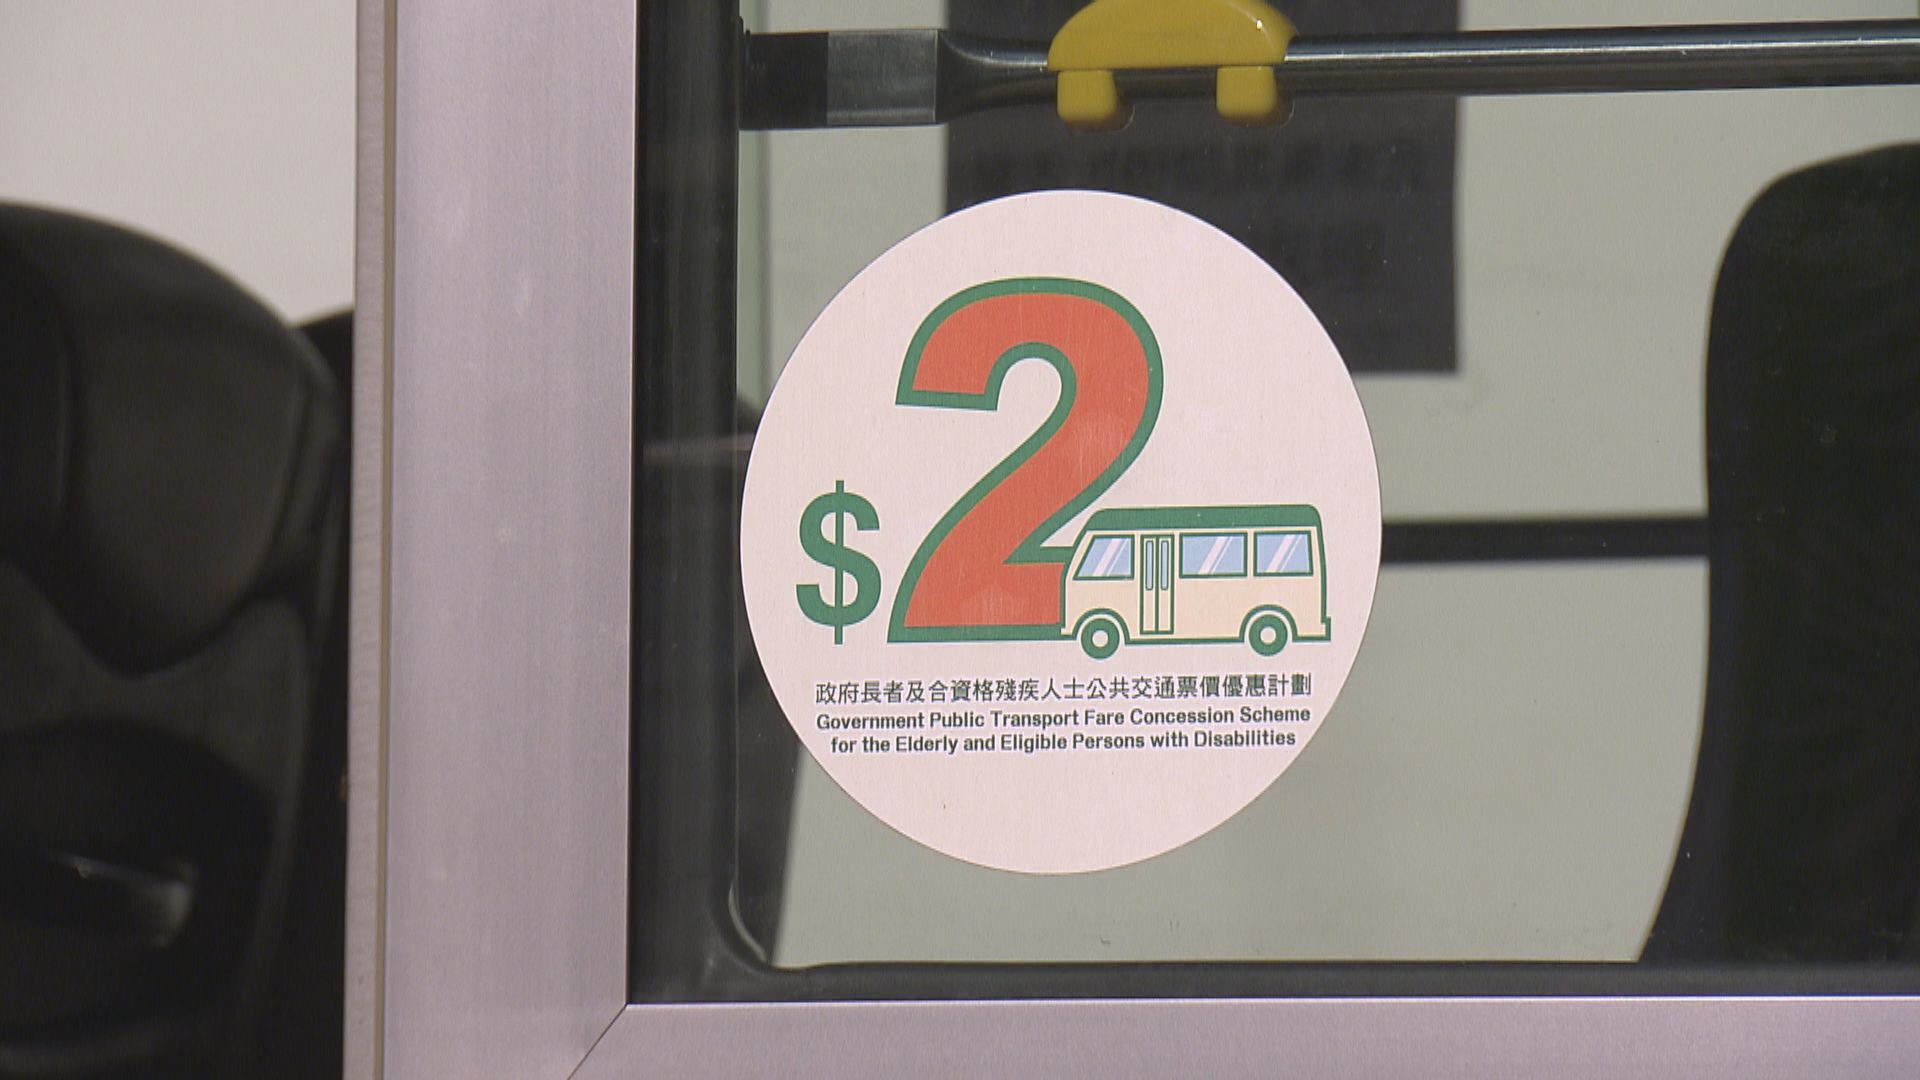 政府強調無意取消兩元乘車優惠及交通費補貼計劃 年底前完成檢討